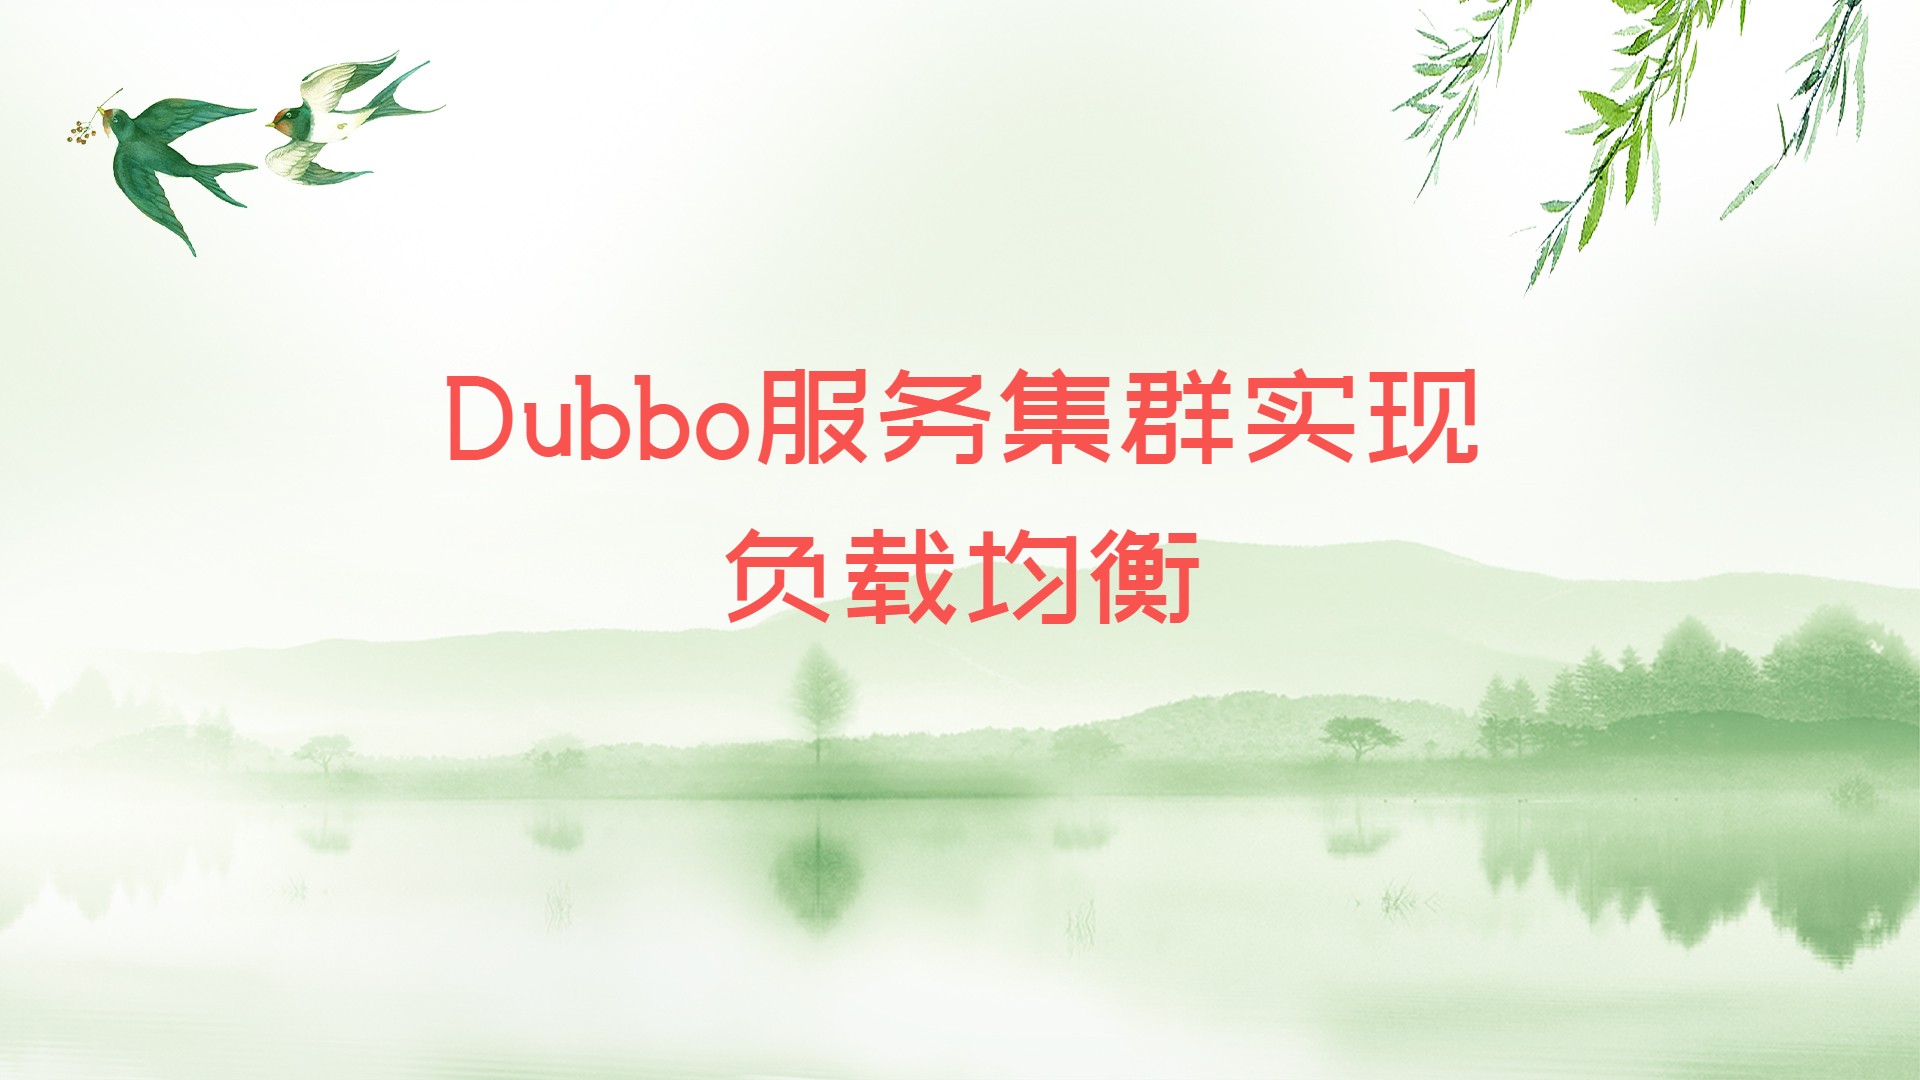 Dubbo服务集群实现负载均衡